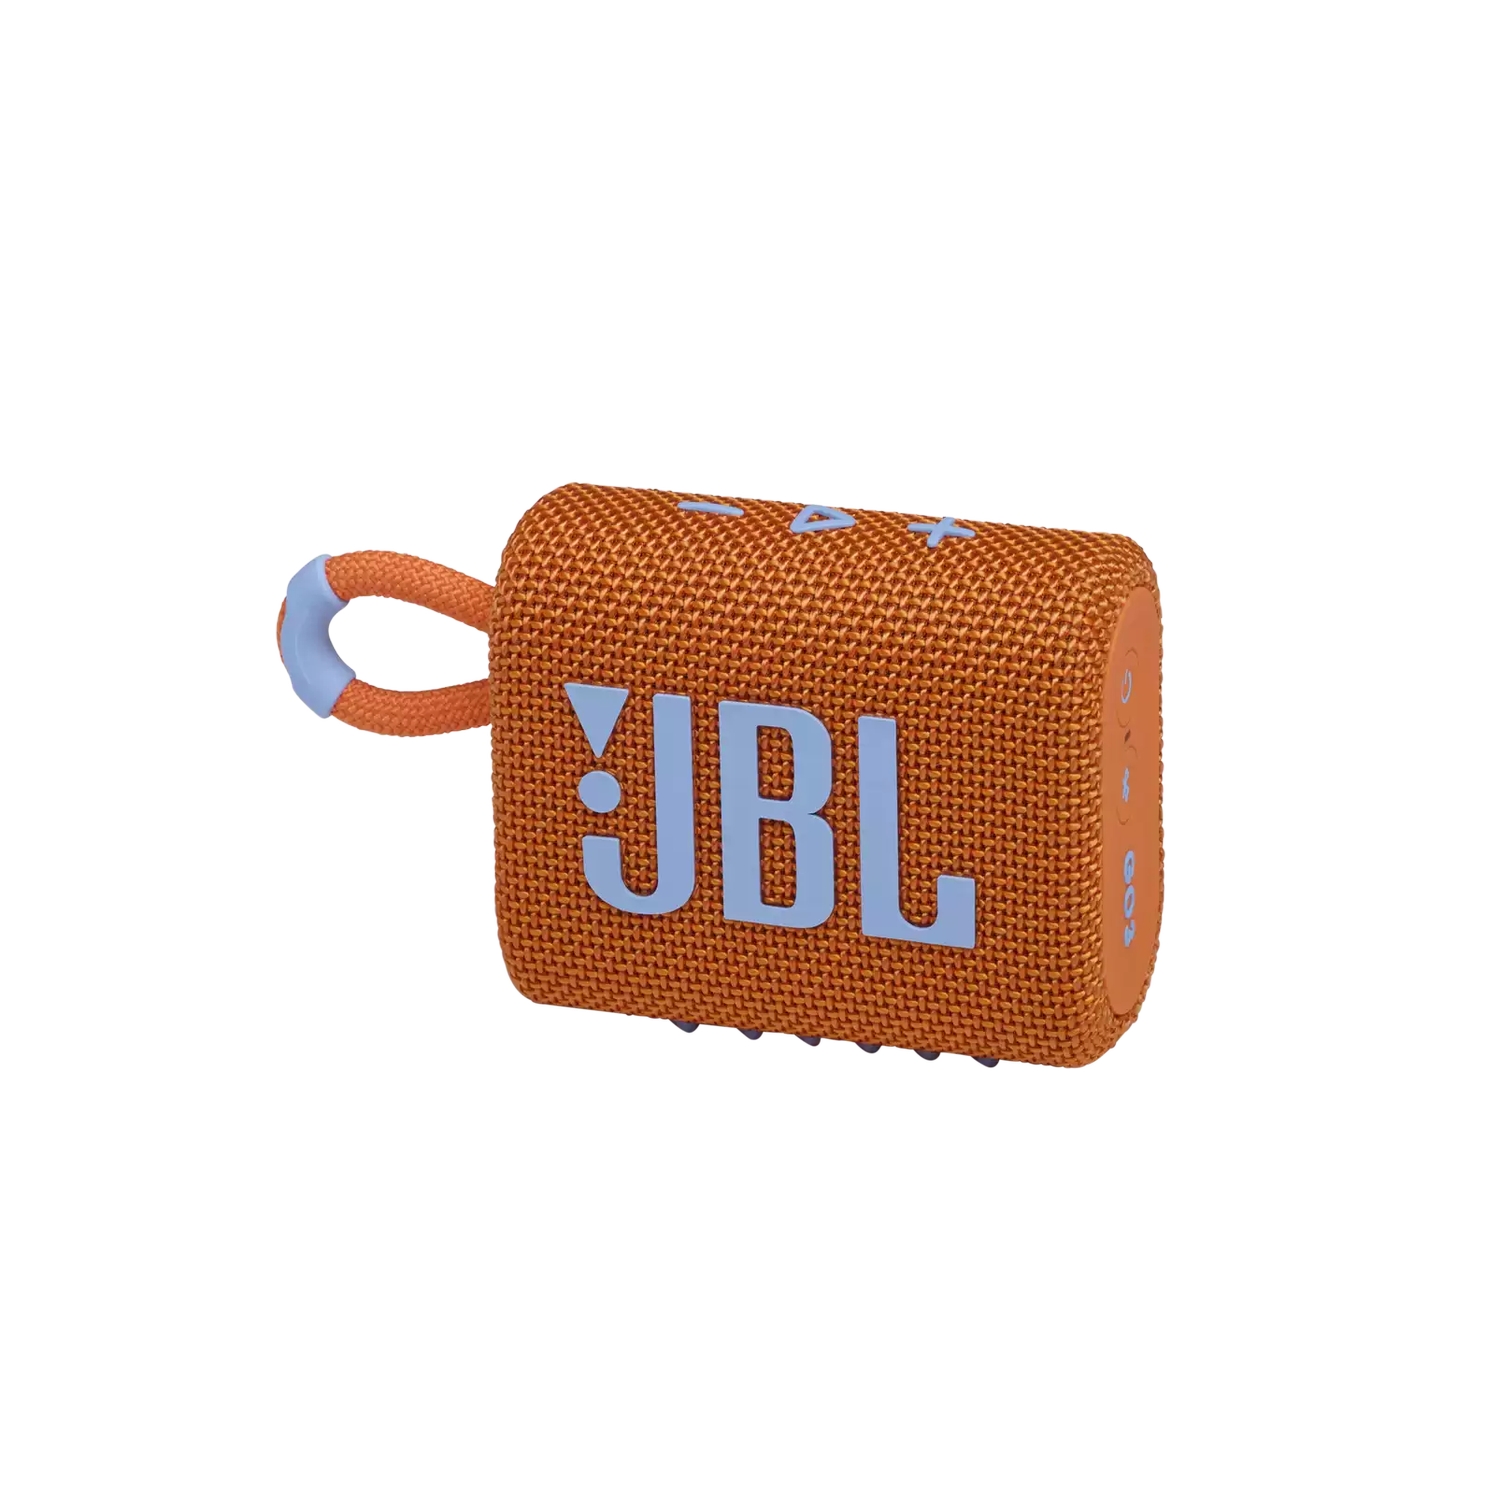 Портативная акустика JBL GO 3 оранжевая портативная акустика jbl go 3 бирюзовая